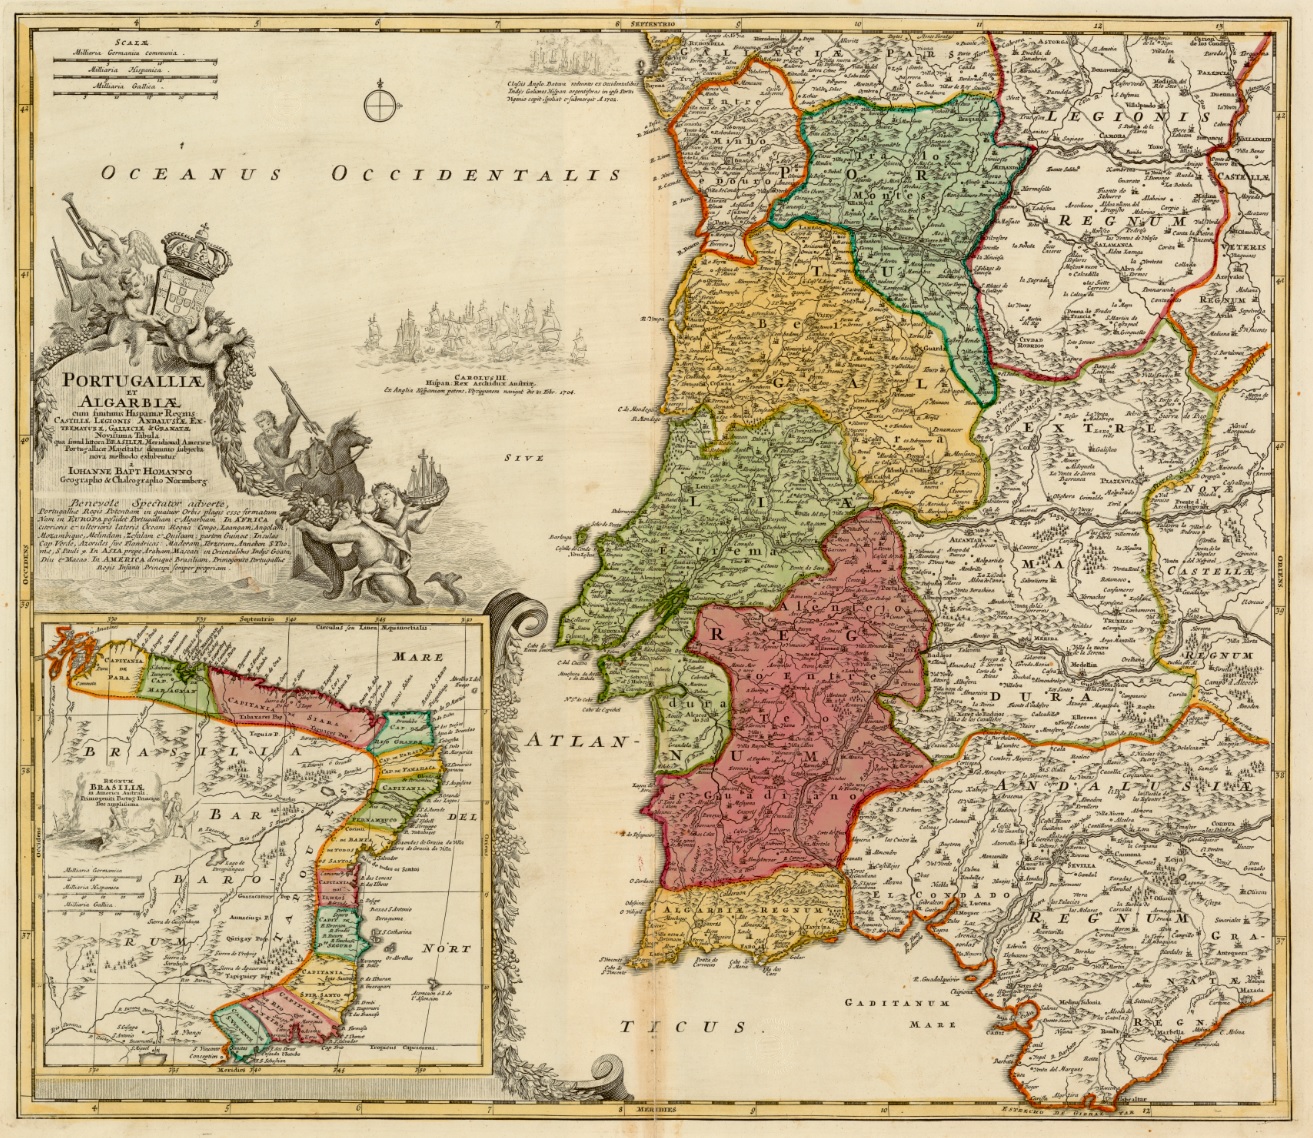 Portugal - Wikipedia